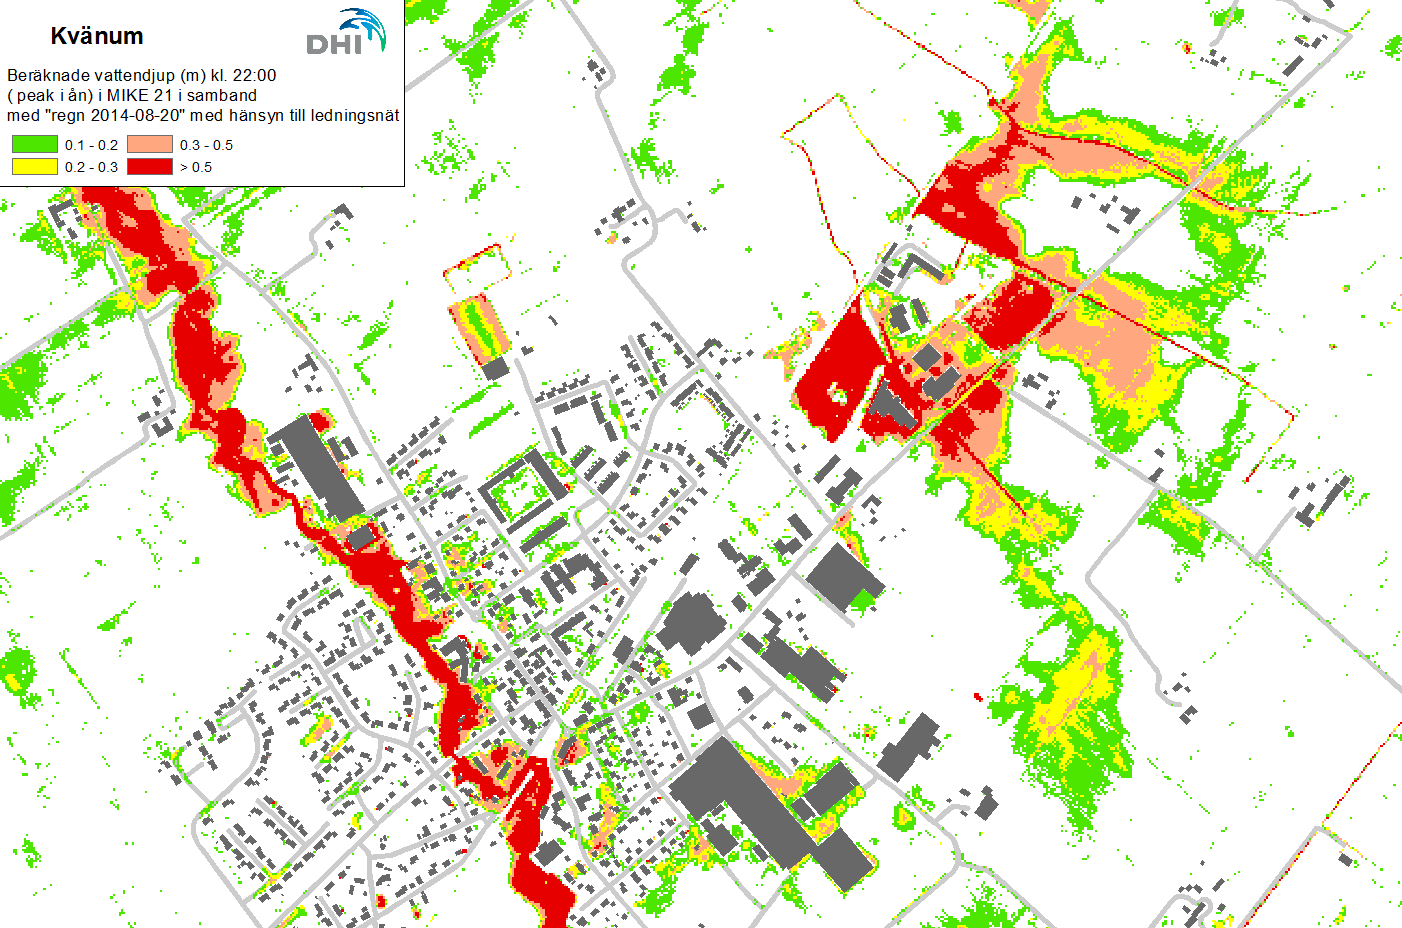 Figur 3-3 Beräknat översvämningsdjup i Kvänum den 20 augusti 2014 kl.10, ca 3 timmar efter skyfallet (avser beräkning med hänsyn till ledningsnätets kapacitet).